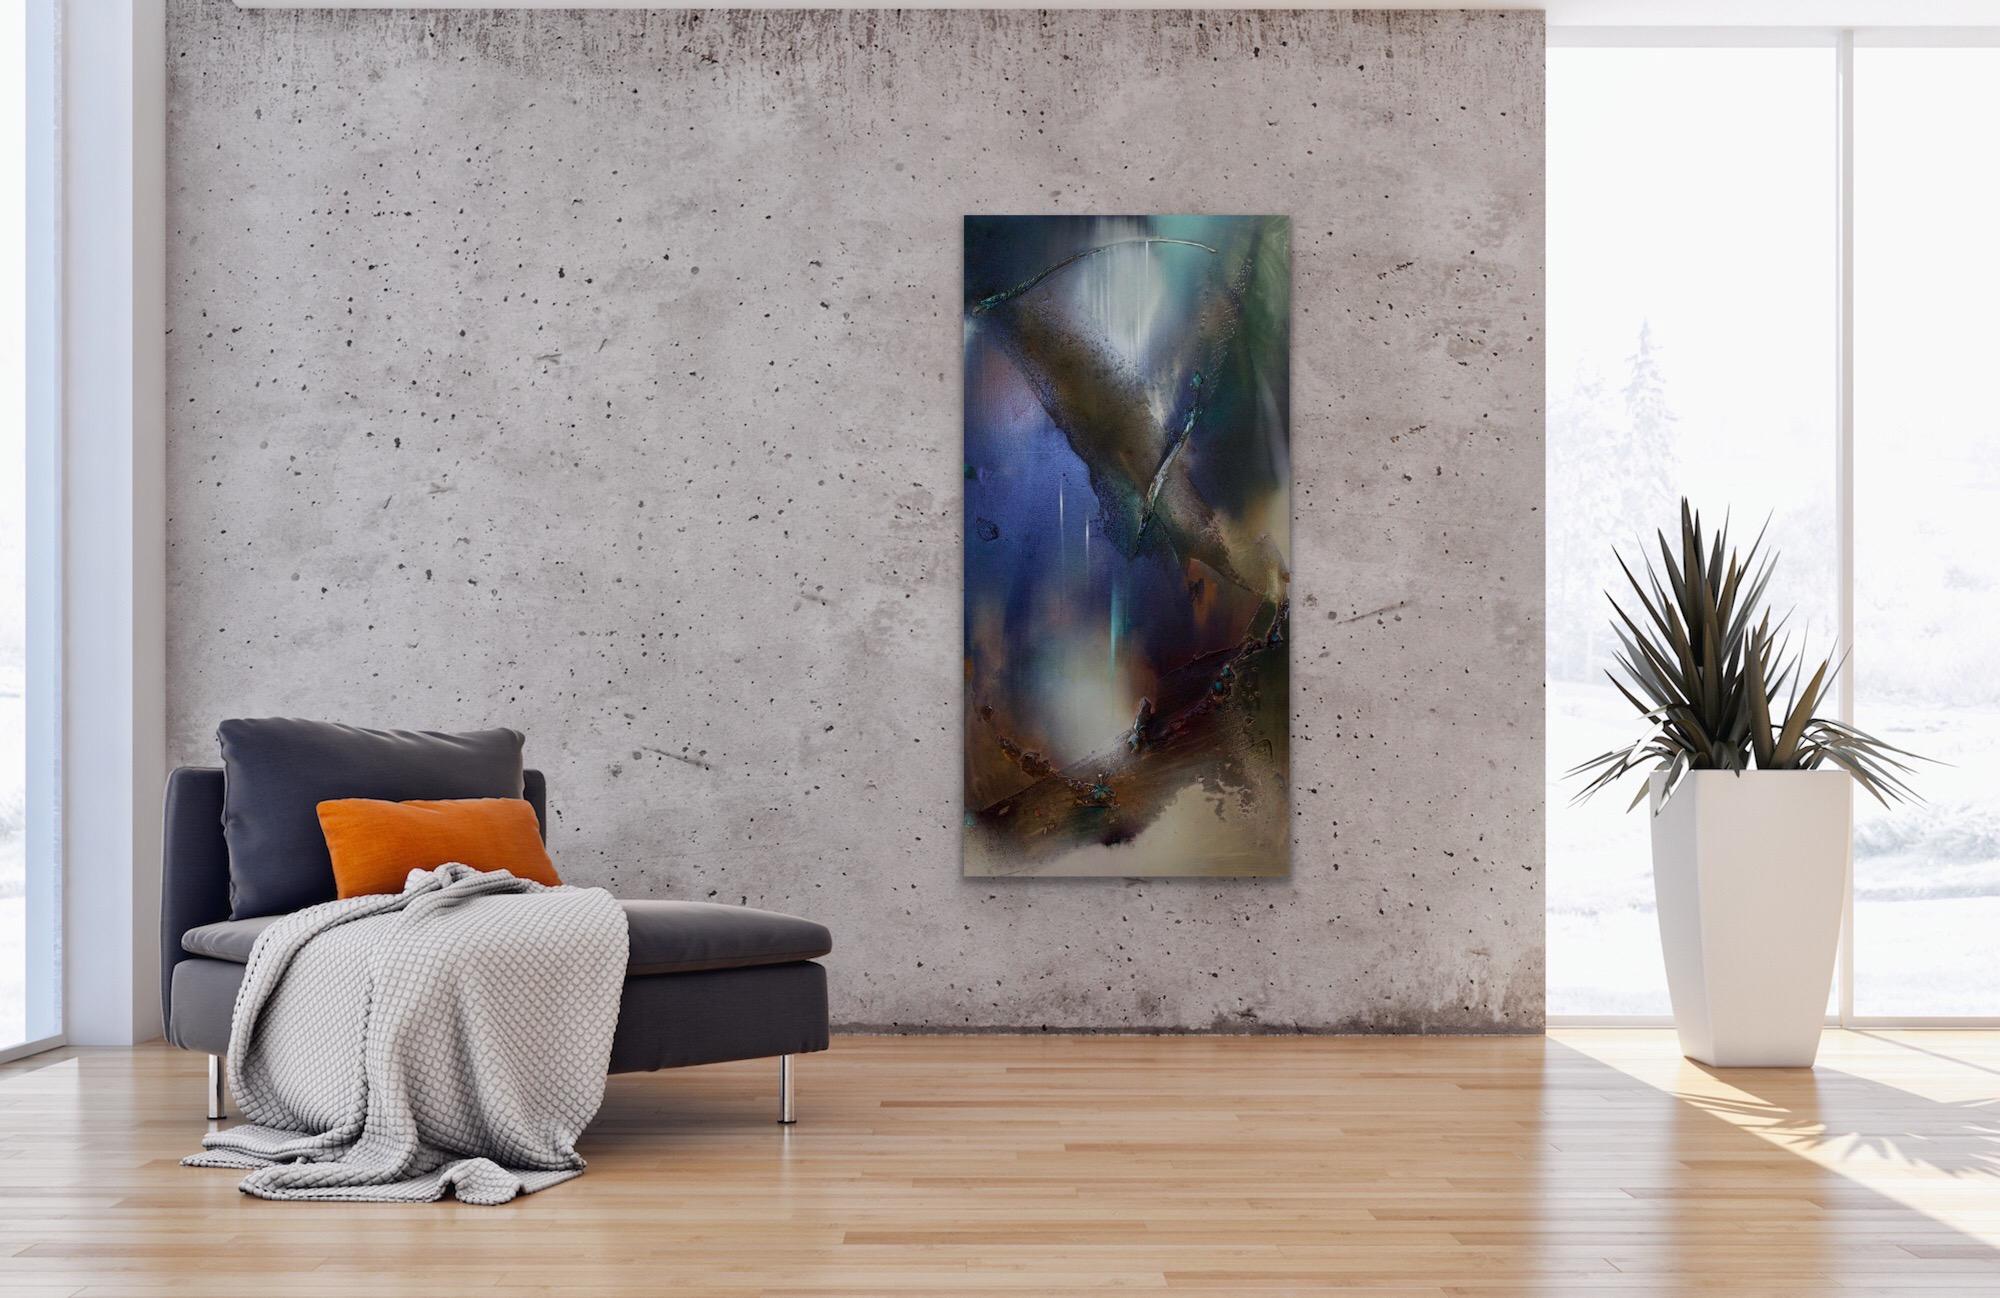 Rift Valley, Sonde 5  (romantischer Romantik Ton Natur organische Kupfer abstrakte Struktur) (Schwarz), Abstract Painting, von Melisa Taylor Metzger